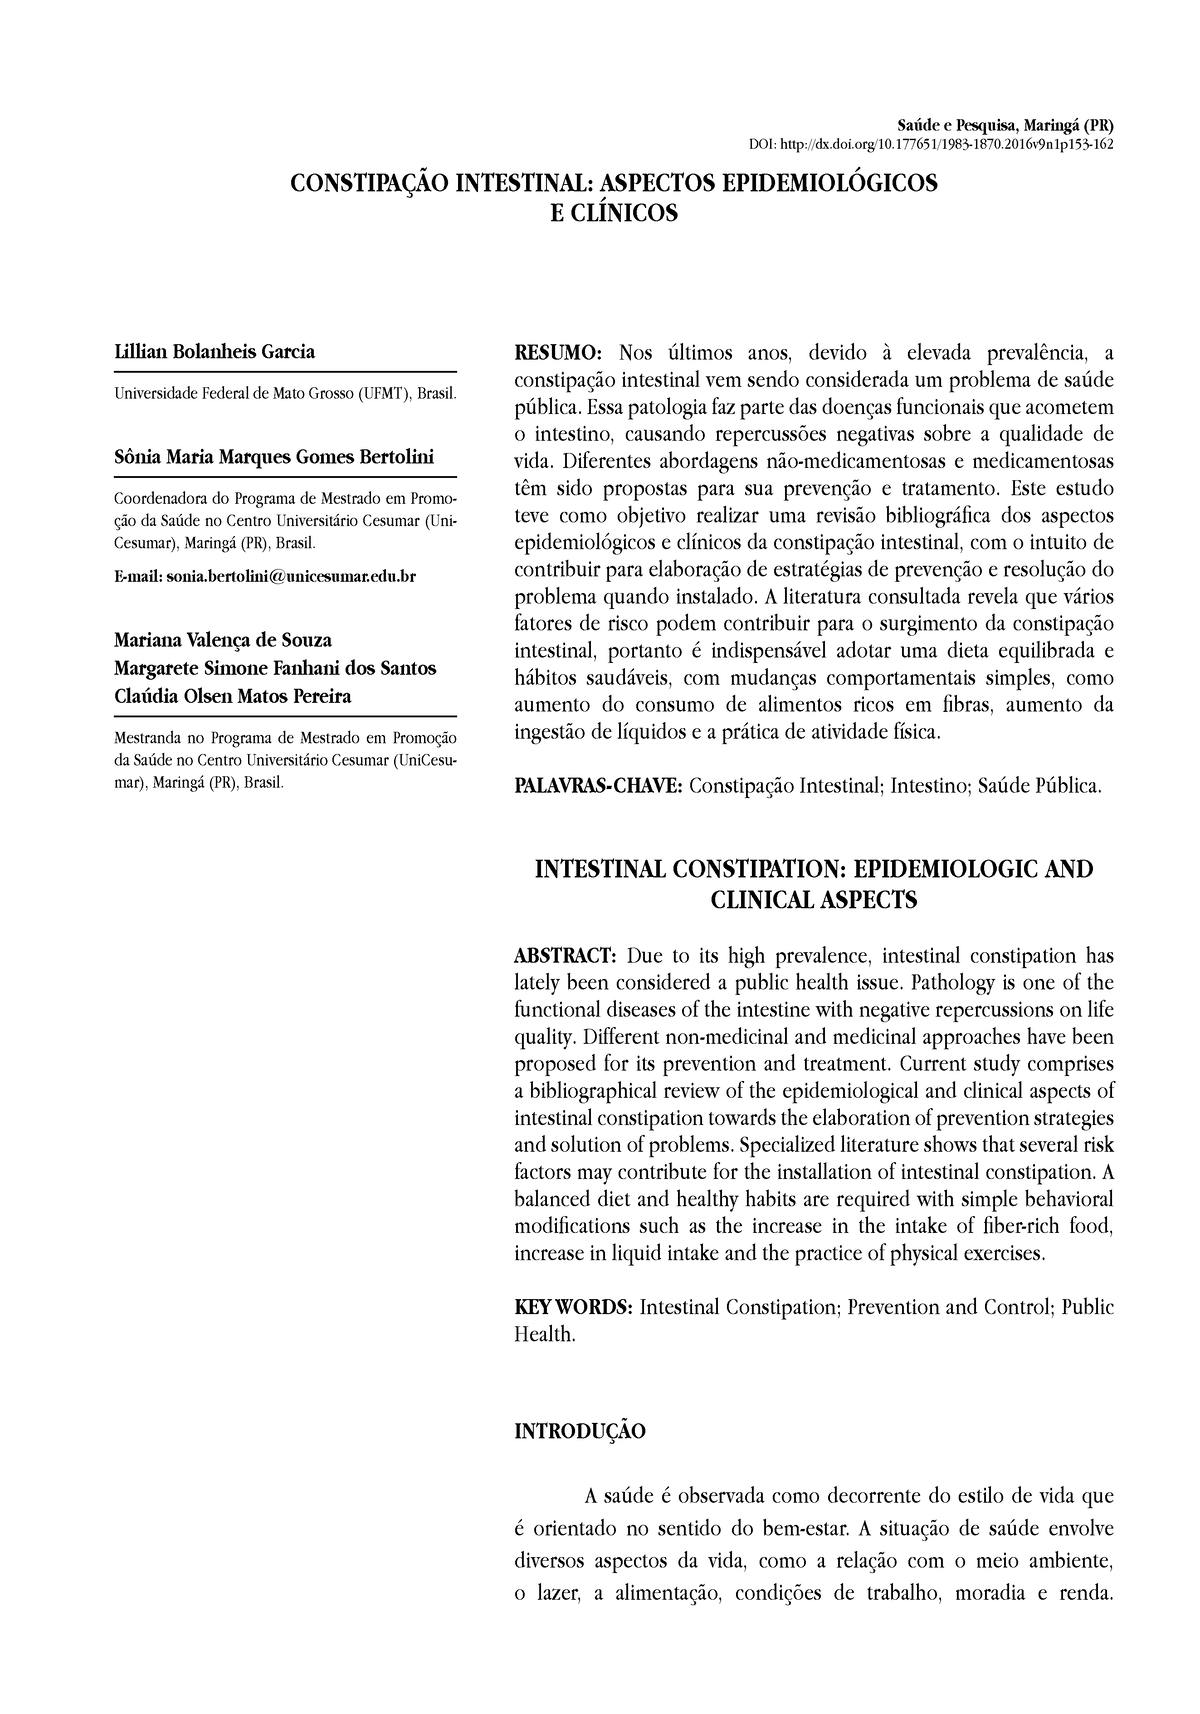 Constipação Intestinal Aspectos Epidemiológicose Clínicos Imprimir ...